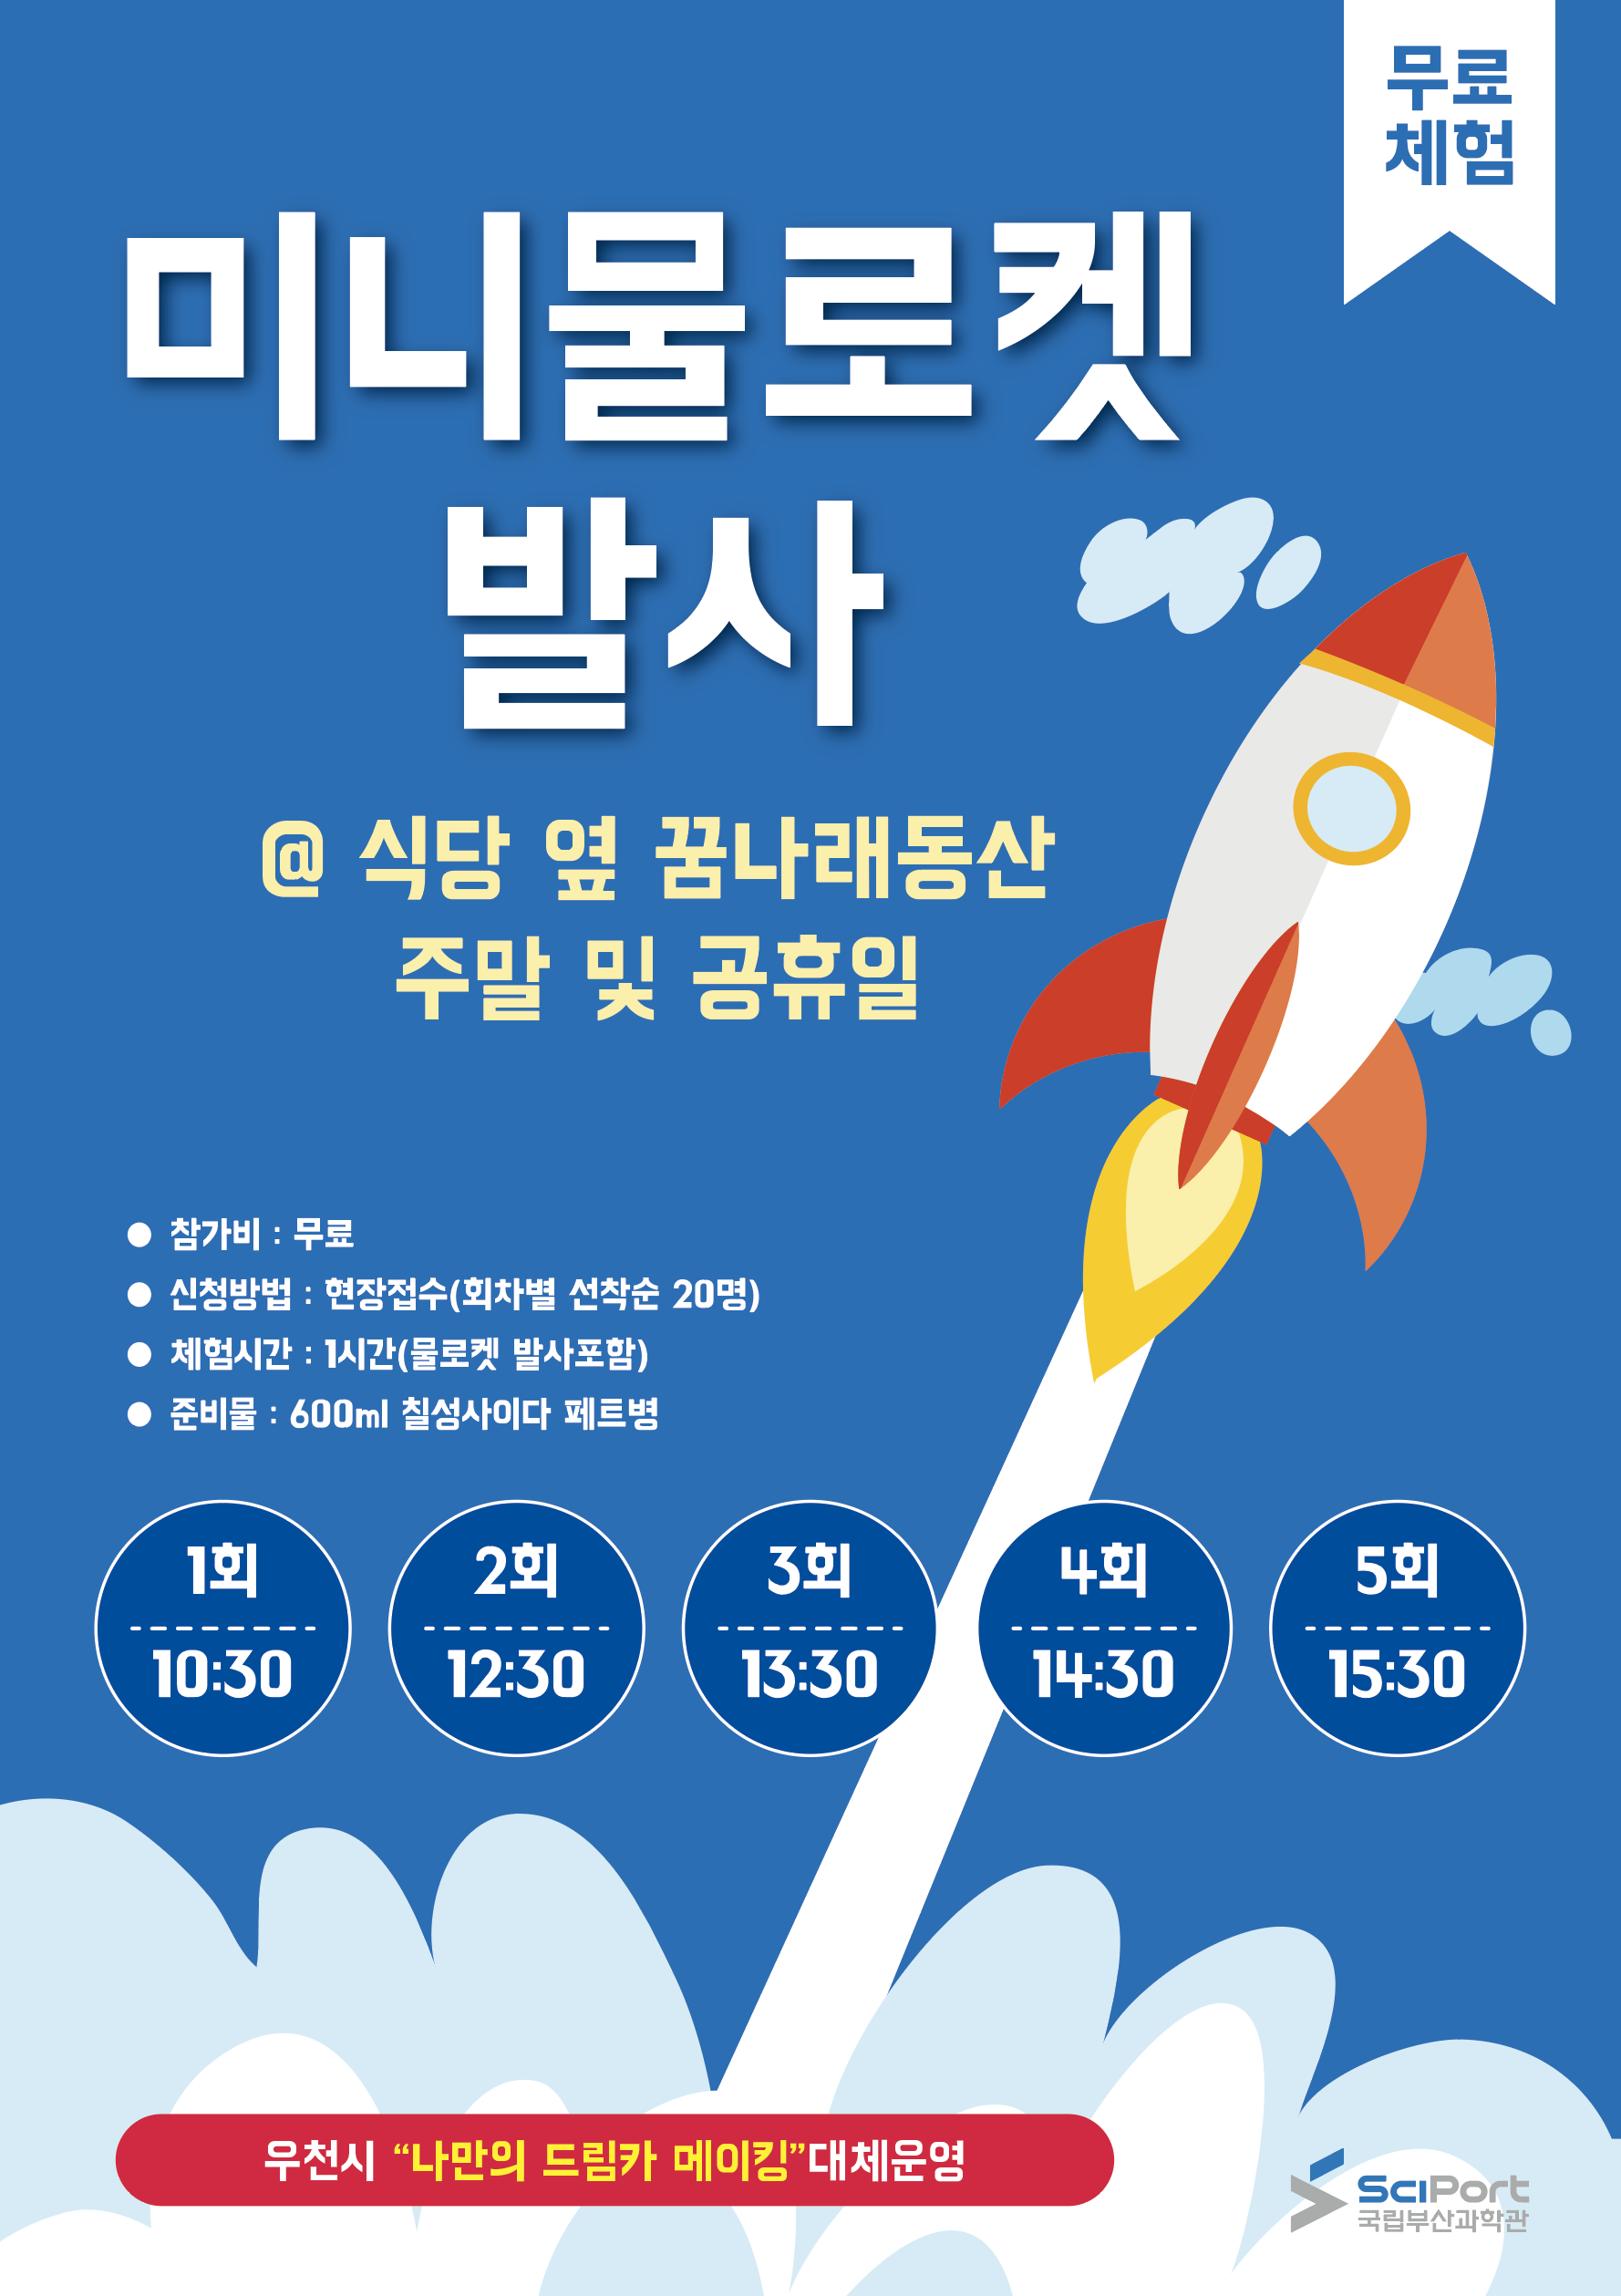 [부산][국립부산과학관] '온가족이 함께 즐기는 키즈메이킹(Kids Making) 프로그램' 미니물로켓 발사 